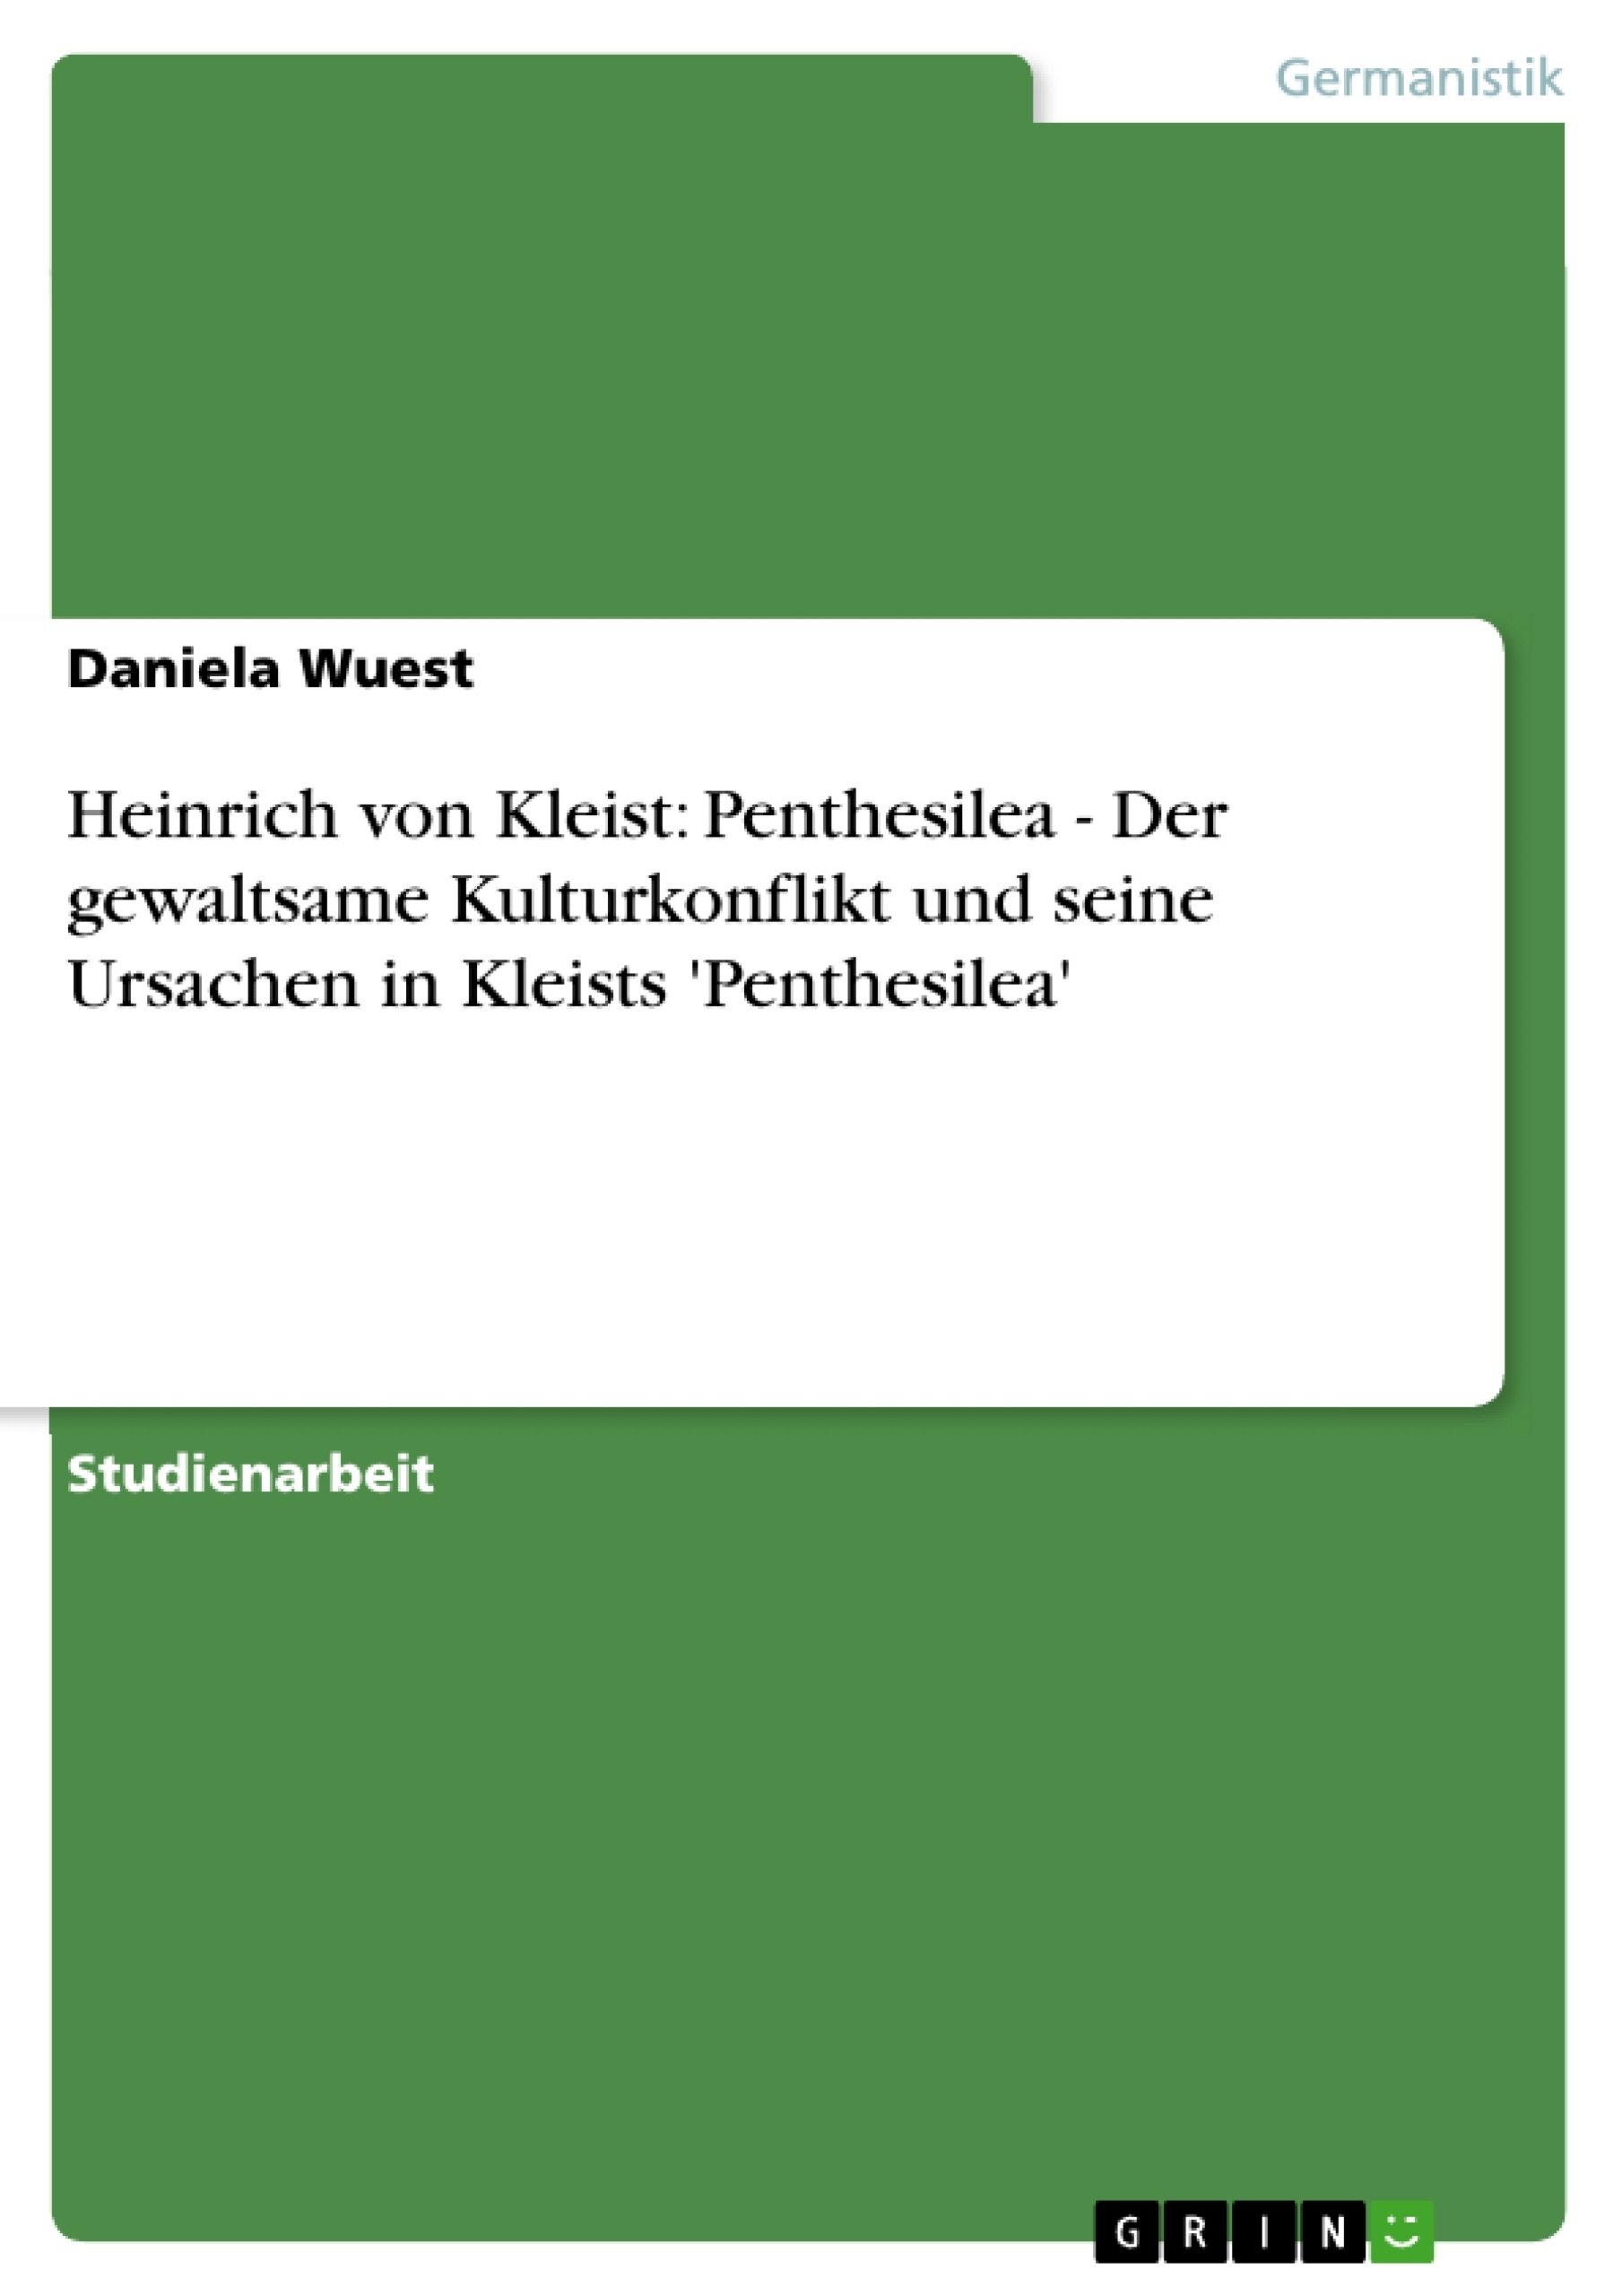 Title: Heinrich von Kleist: Penthesilea - Der gewaltsame Kulturkonflikt und seine Ursachen in Kleists 'Penthesilea'